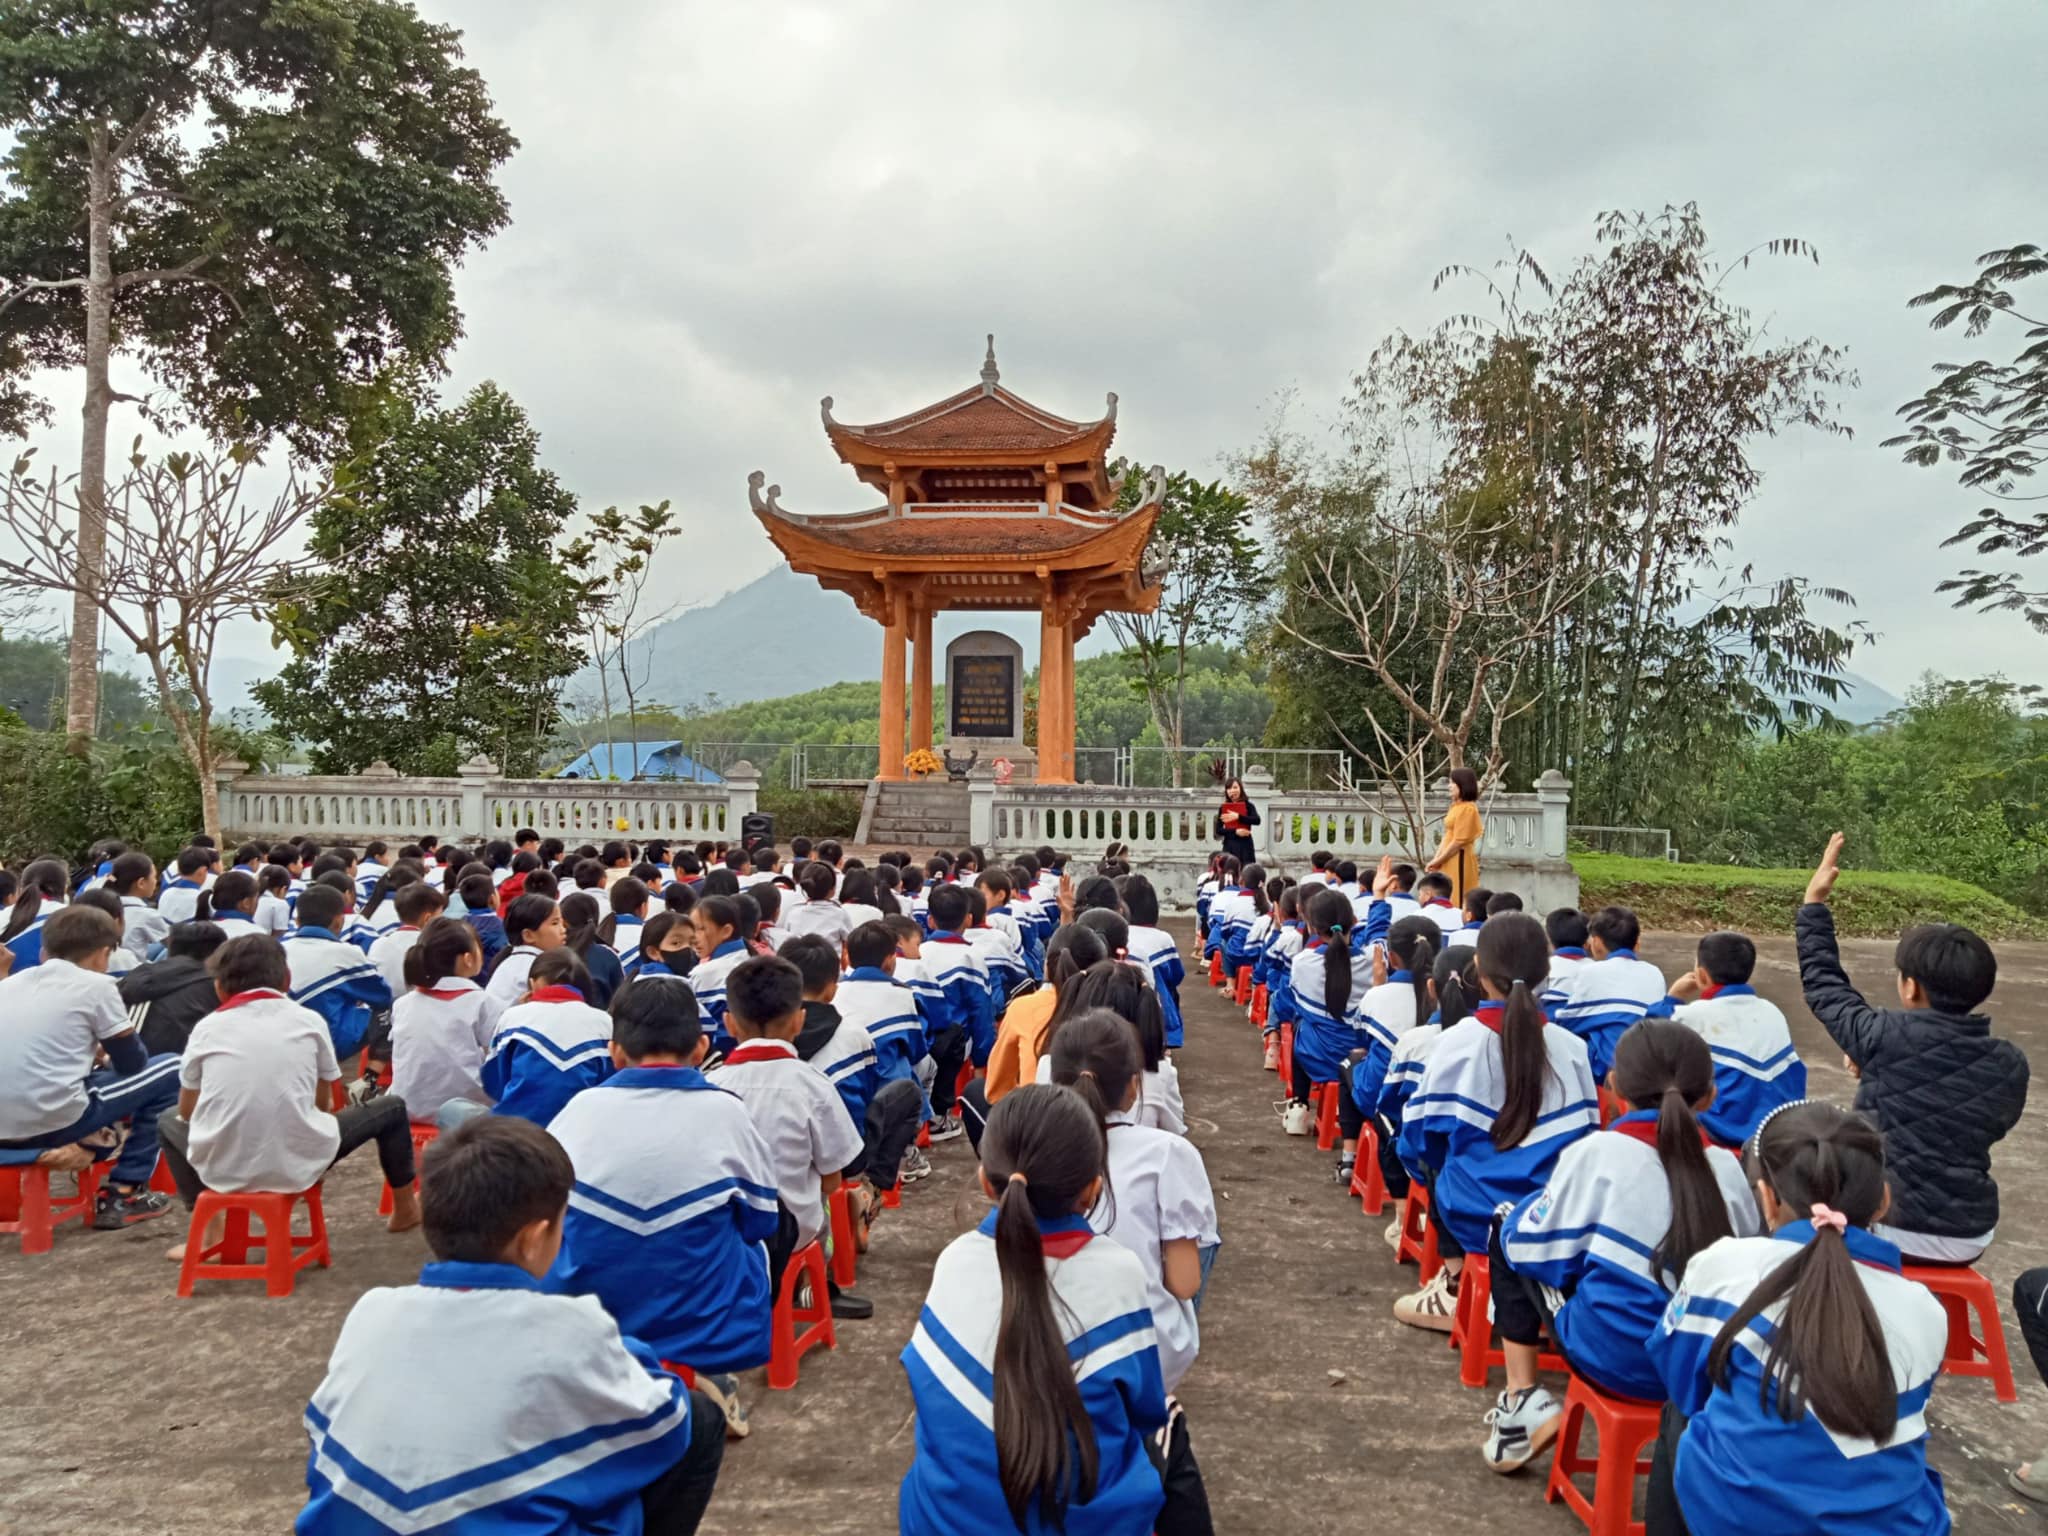 Học sinh tham gia chương trình ngoại khóa giáo dục về lịch và truyền thống cách mạng tại một điểm di tích lịch sử ở ATK Định Hoá. Nguồn: atkthainguyen.org.vn